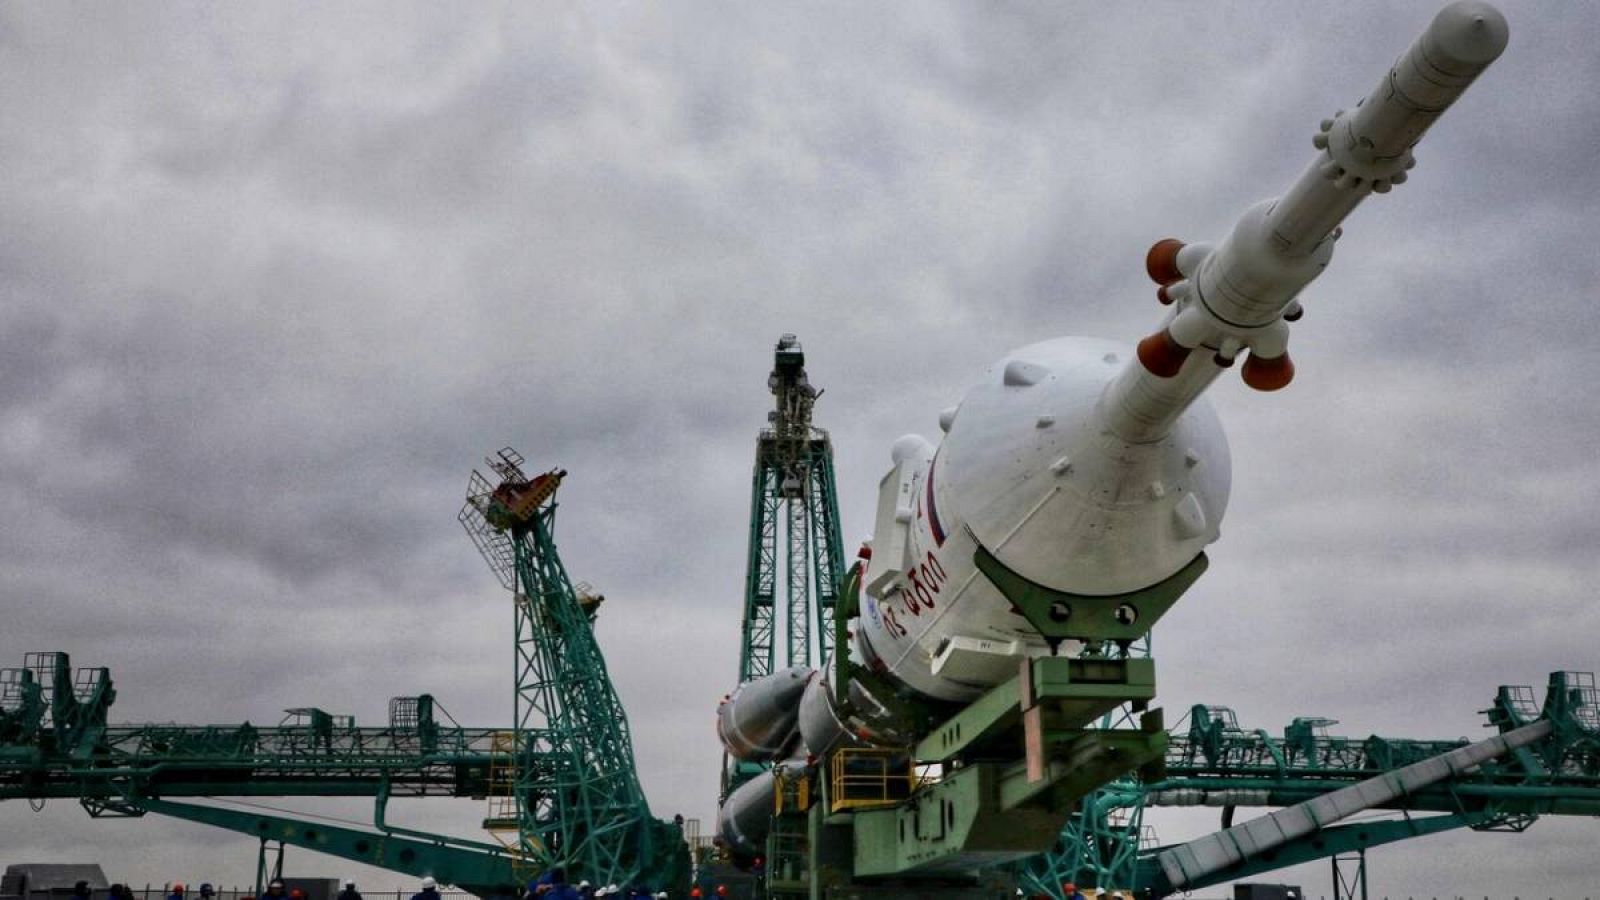 El cohete propulsor Soyuz-2.1a con la nave espacial Soyuz MS-21 se eleva a la plataforma de lanzamiento en el cosmódromo de Baikonur alquilado por Rusia en Kazajstán el 15 de marzo de 2022.